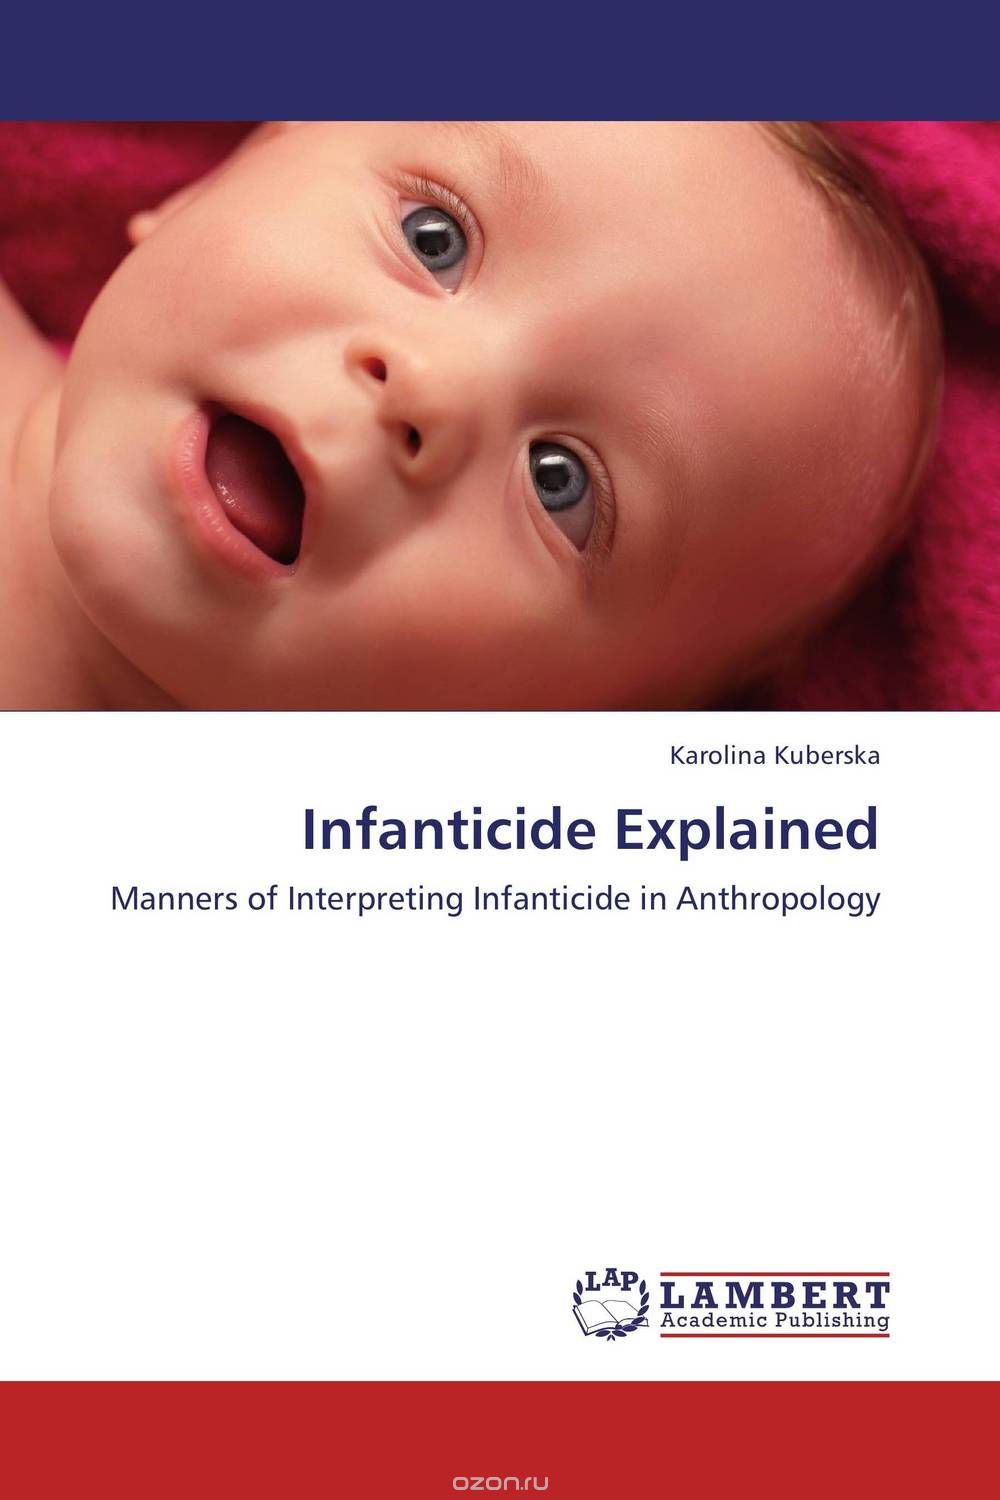 Скачать книгу "Infanticide Explained"